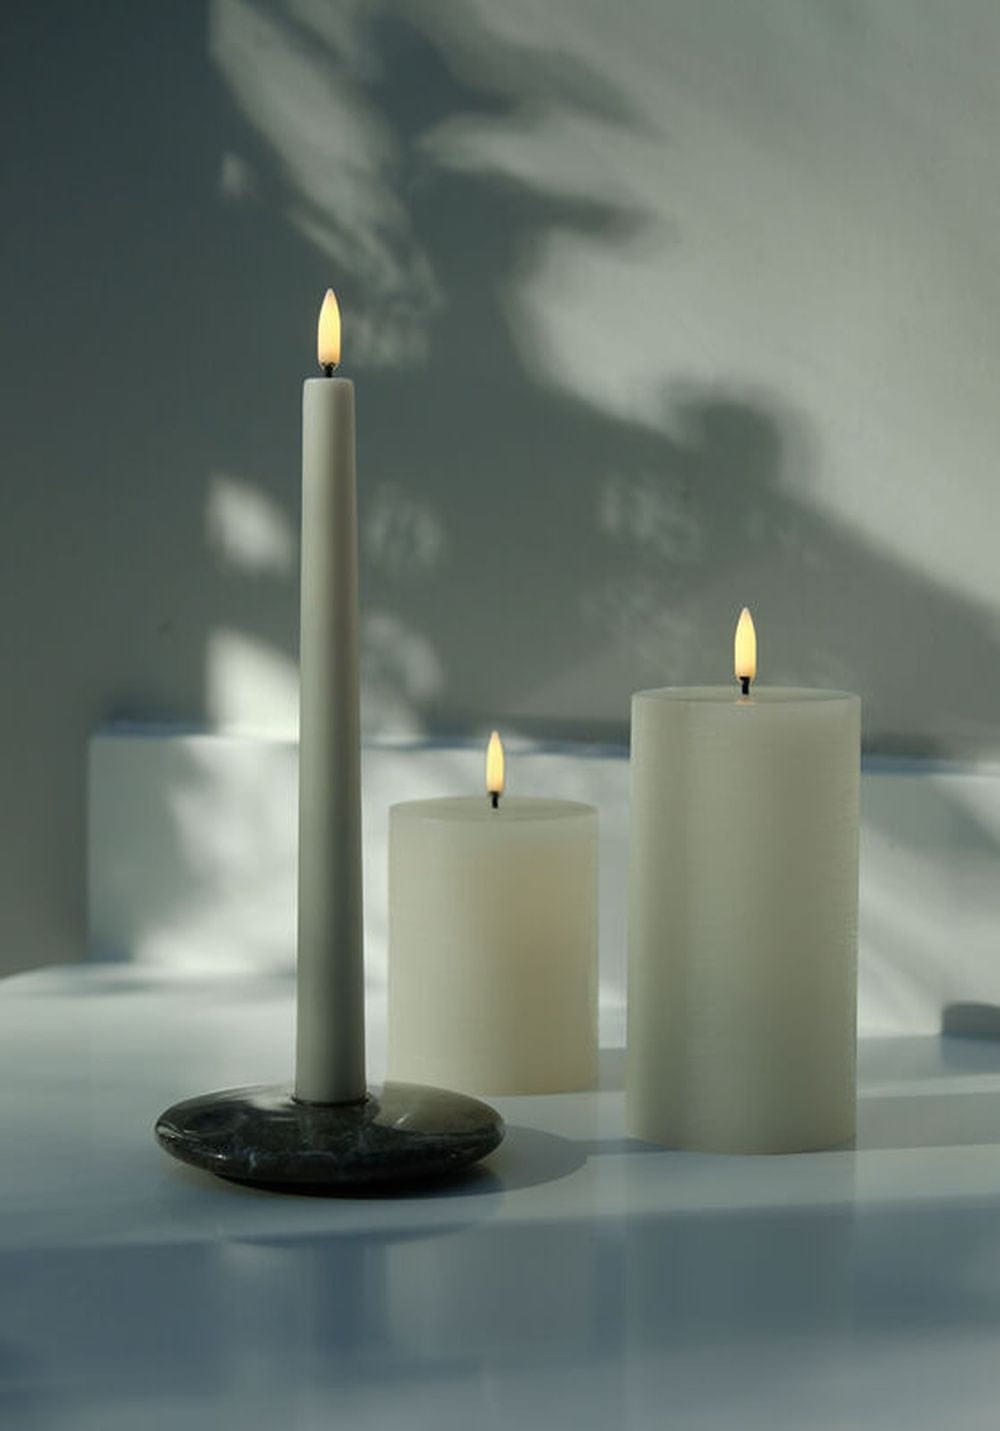 Cougie de pilier LED d'éclairage Uyuni 3 D Flame 7,8x10,1 cm, vanille rustique